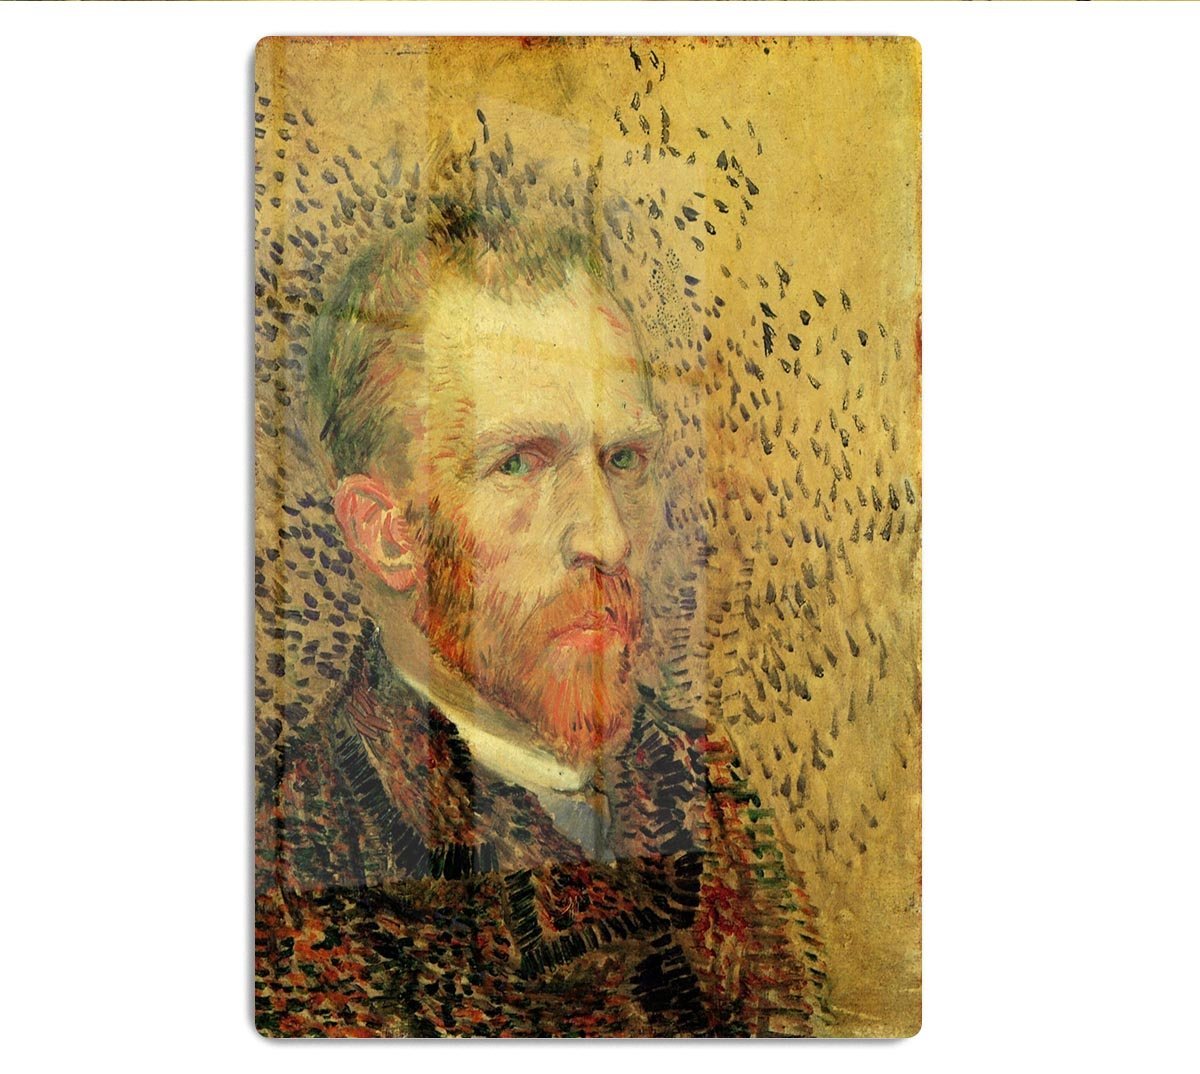 Self-Portrait 5 by Van Gogh HD Metal Print